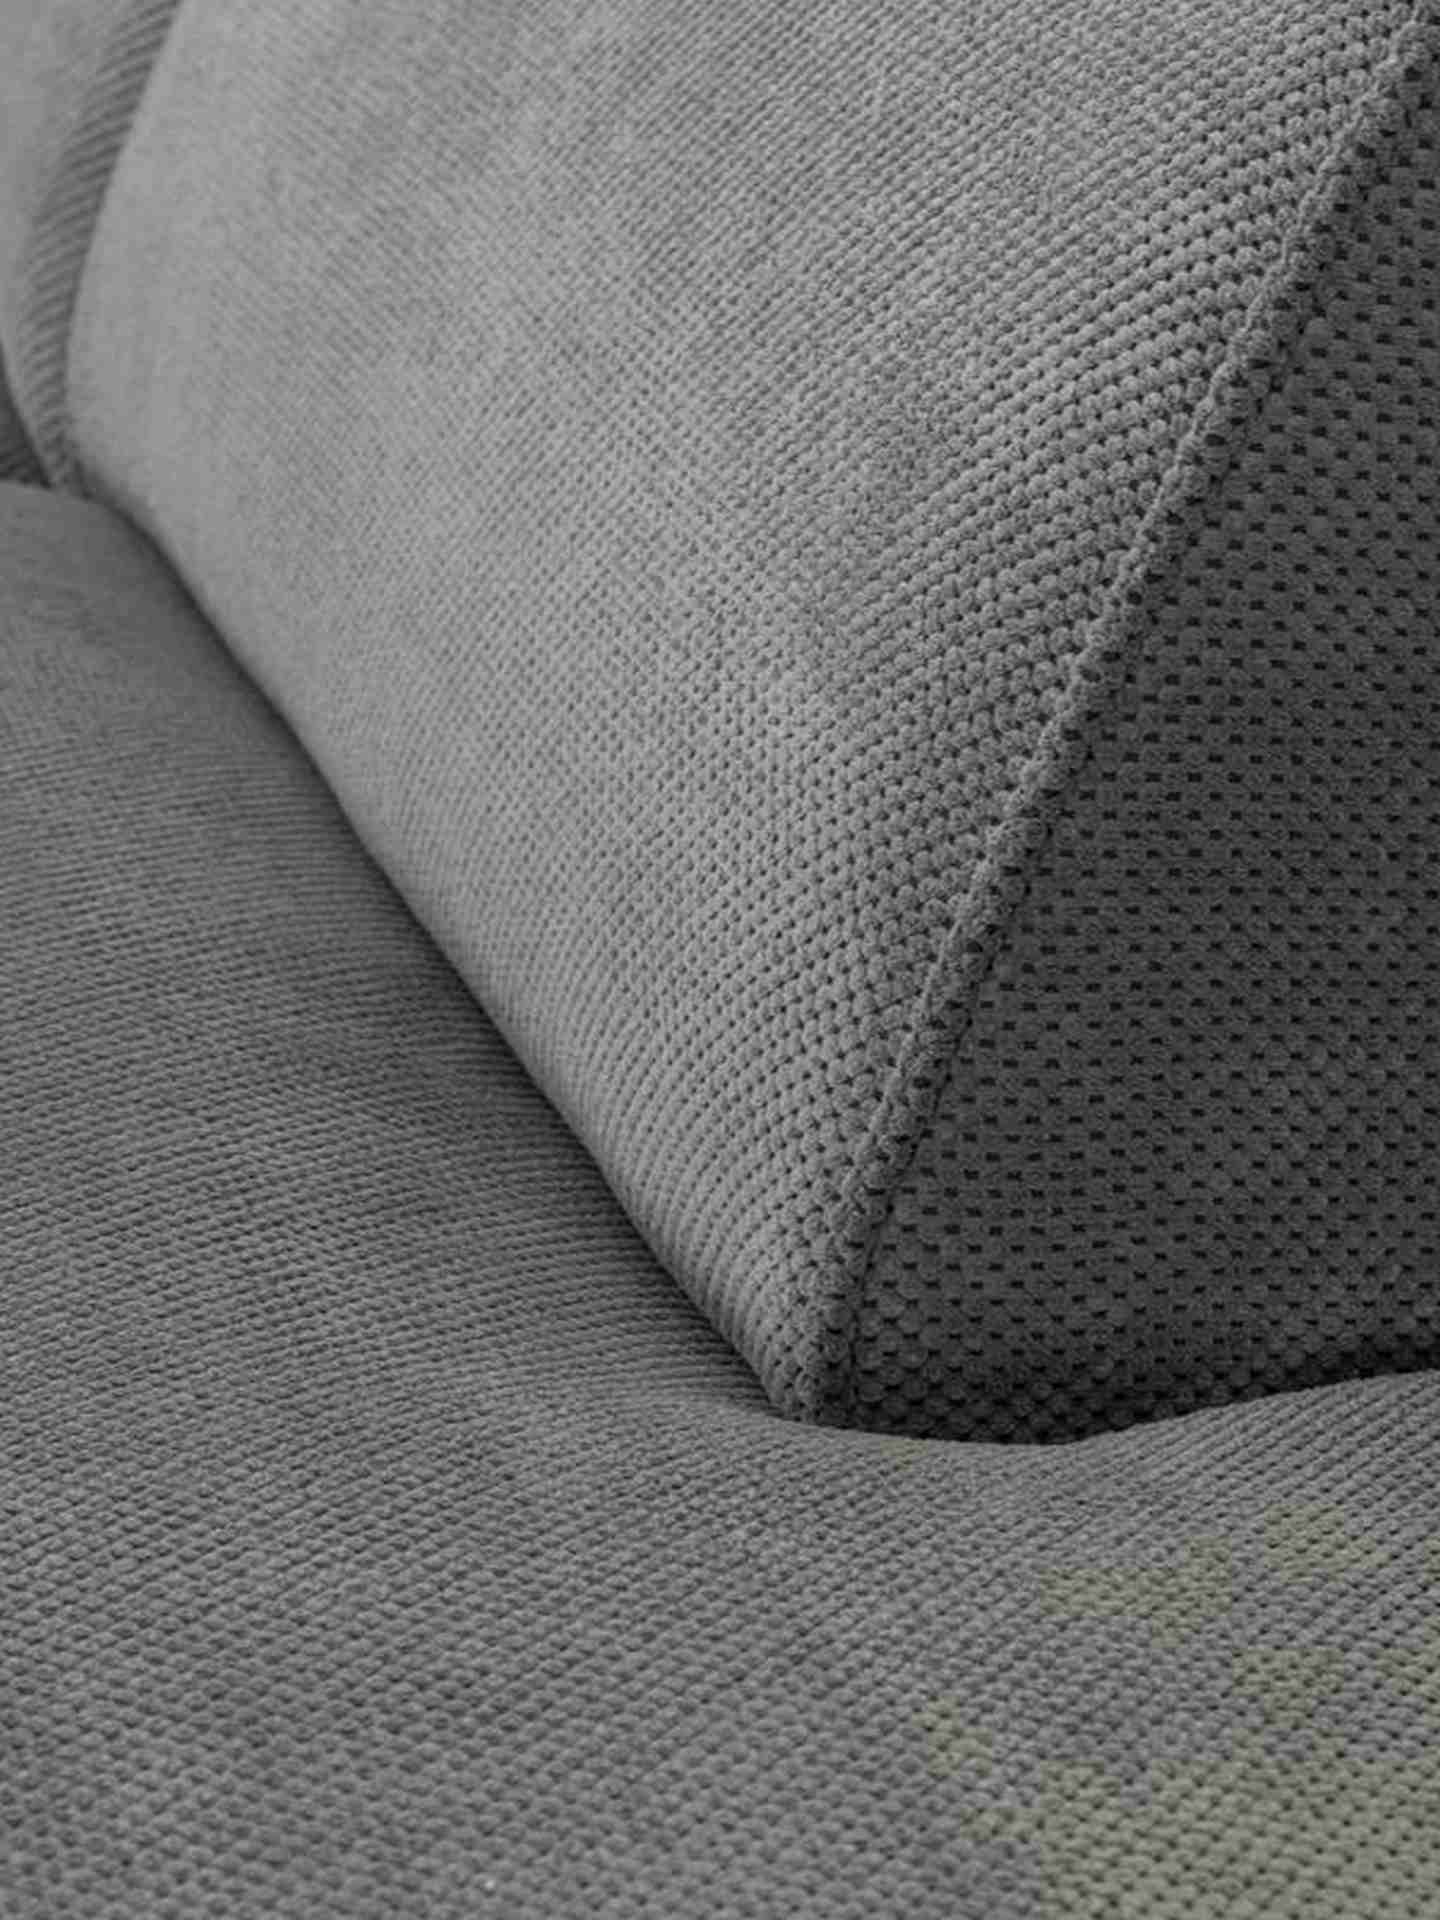 Das Ecksofa Cliff wurde aus weichem Stoff gefertigt, welcher einen Grauen Farbton besitzt. Das Sofa überzeugt mit seinem modernem Design. Diese Variante hat die Ausführung Links.